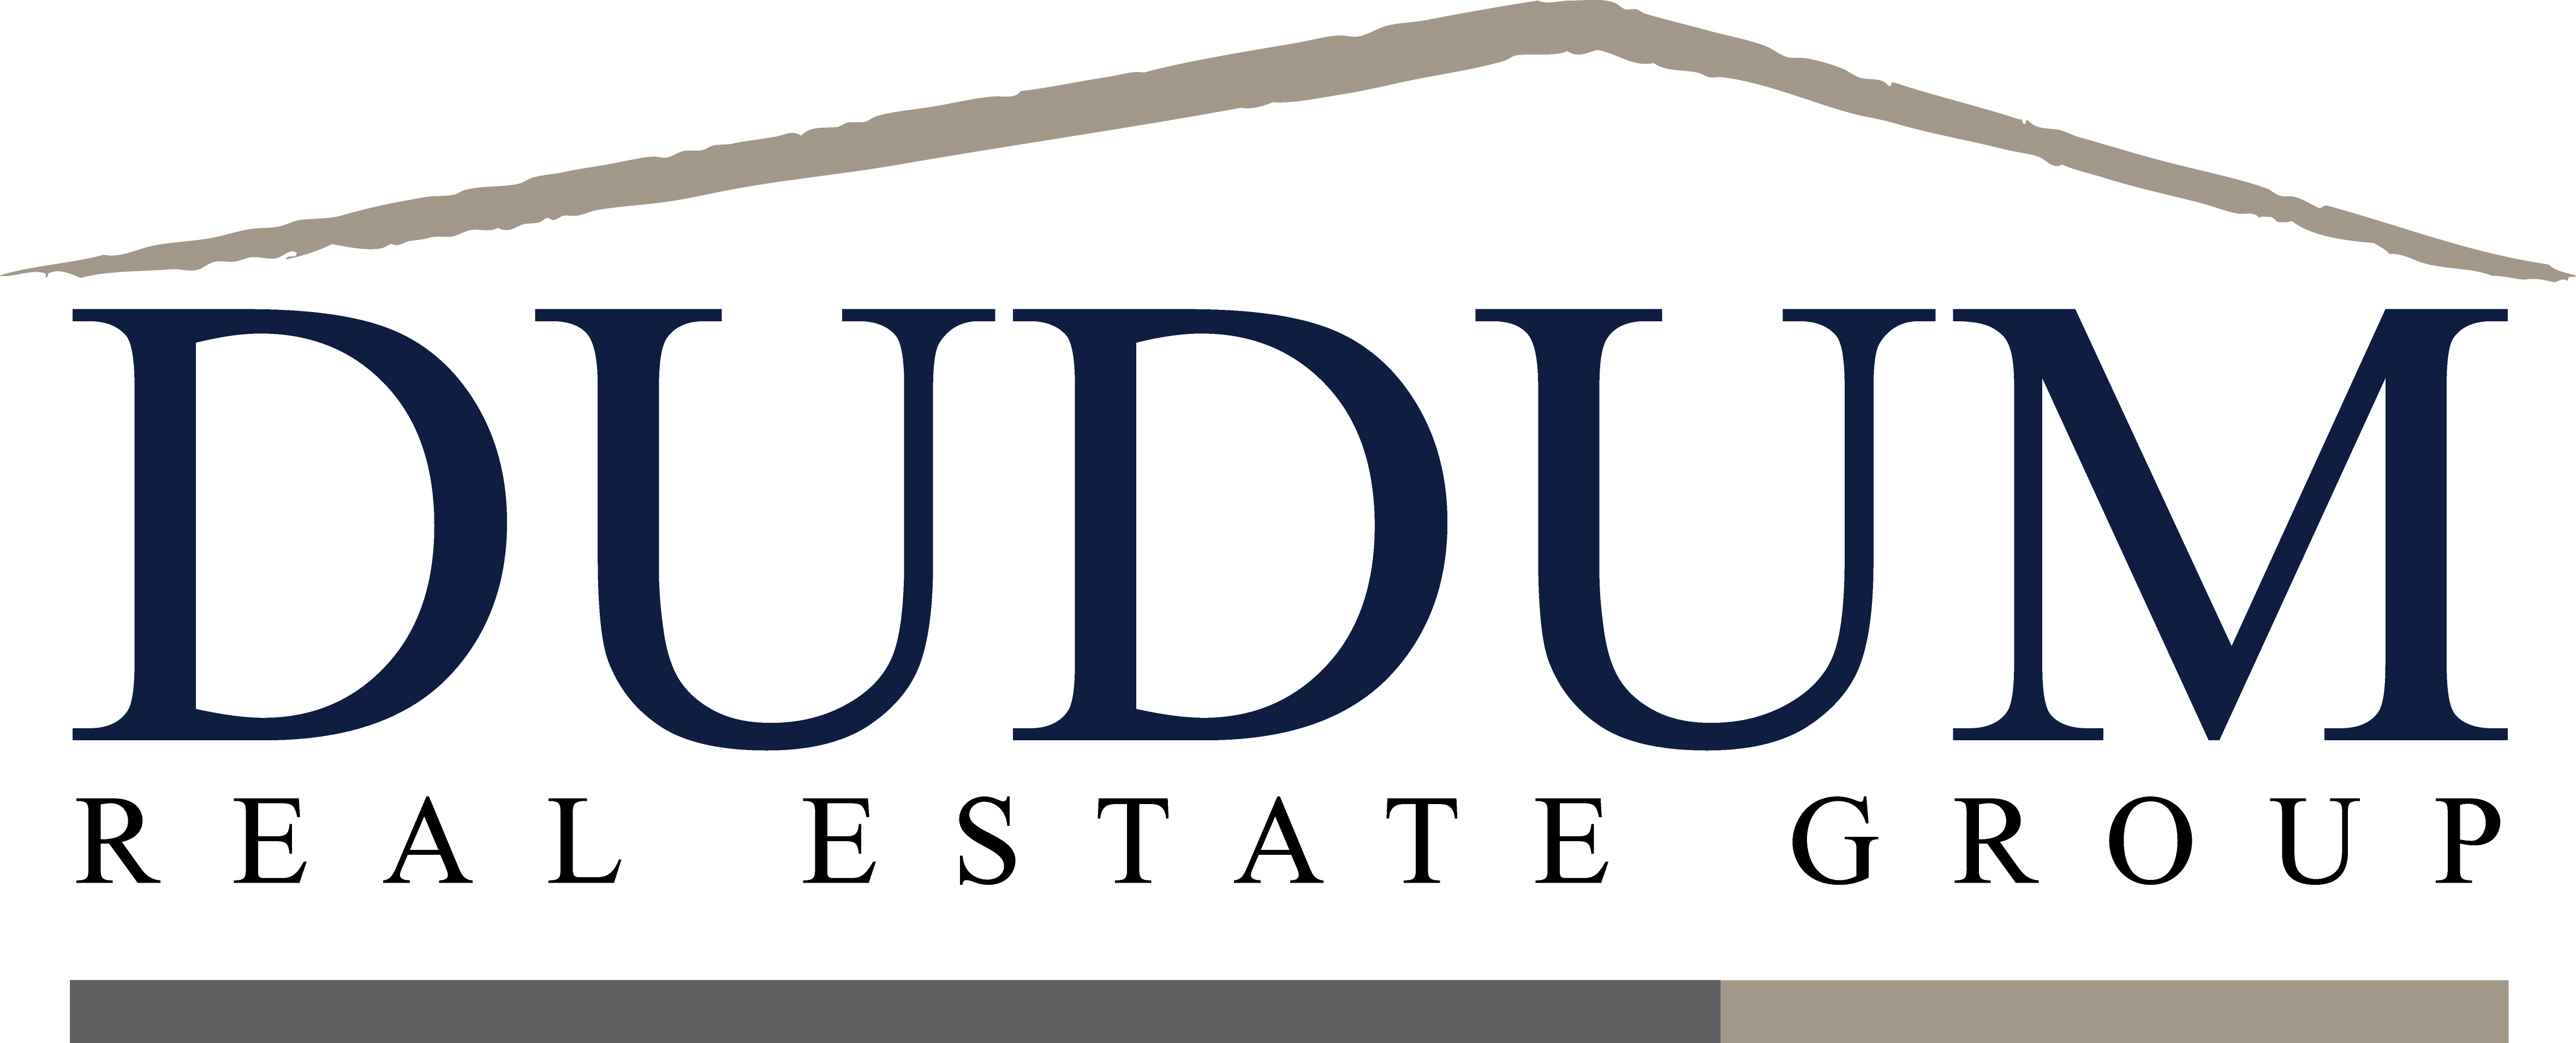 Dudum Real Estate | License #000675689 & 01339596